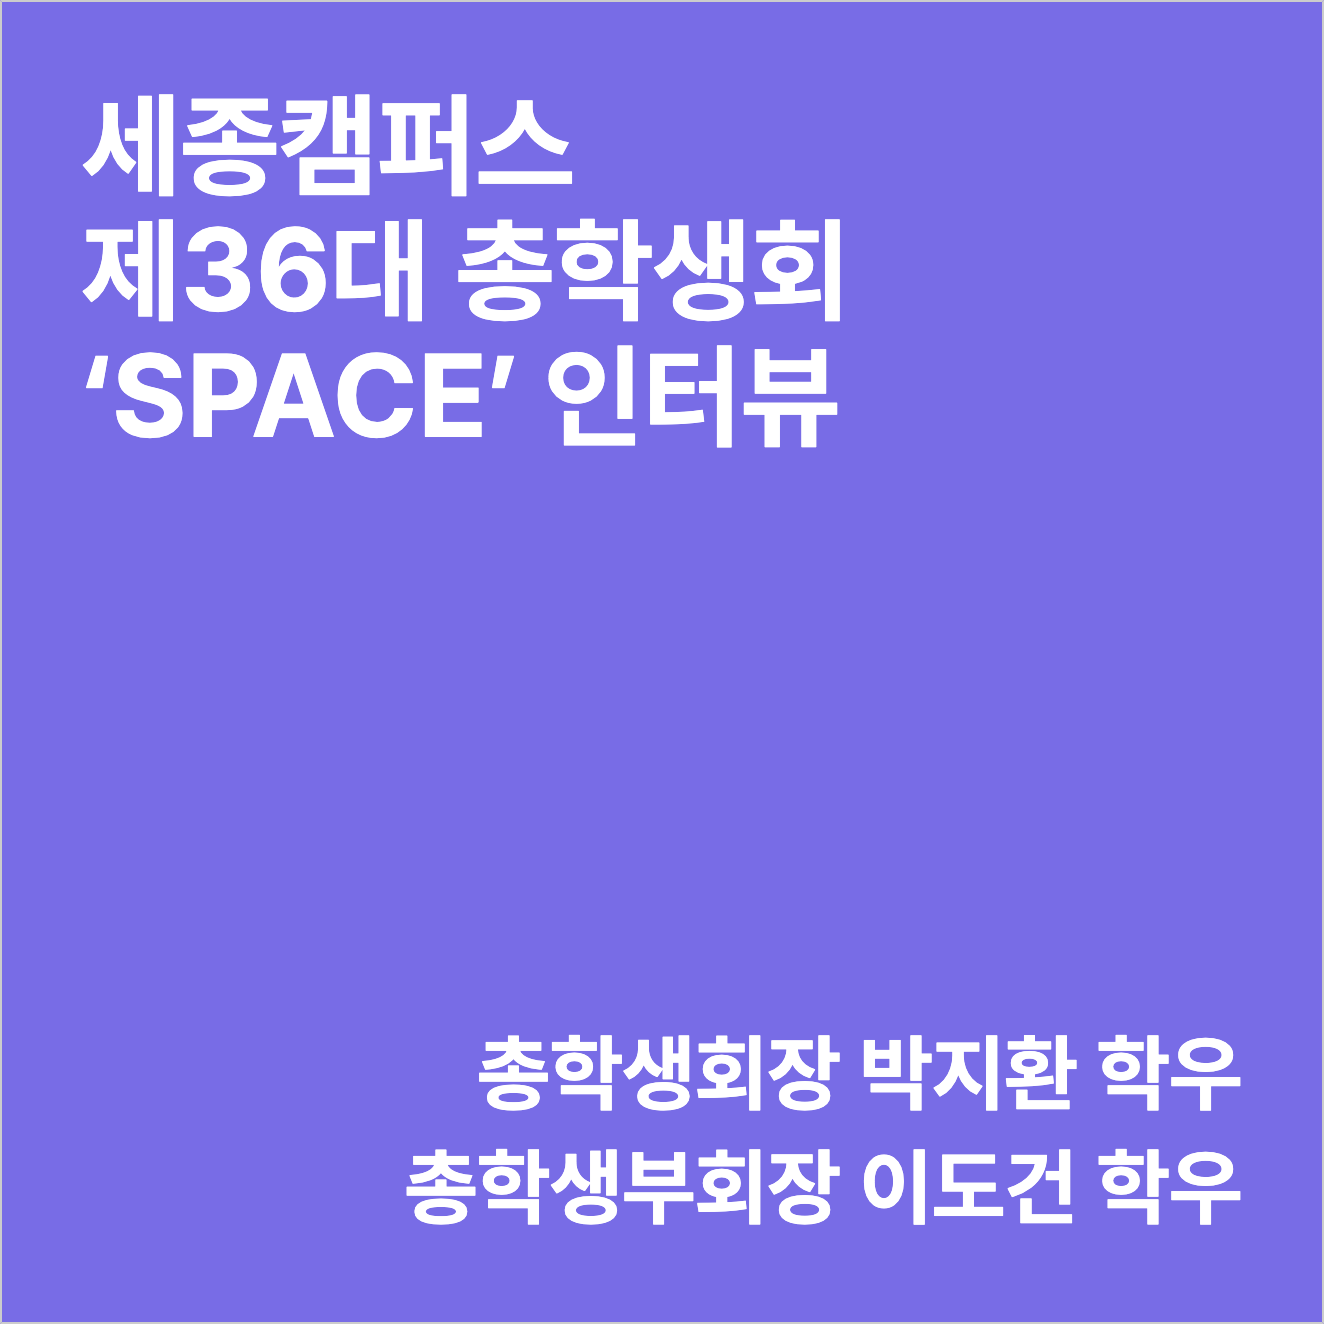 세종캠퍼스 제 36대 총학생회 ‘SPACE(스페이스)’ 인터뷰